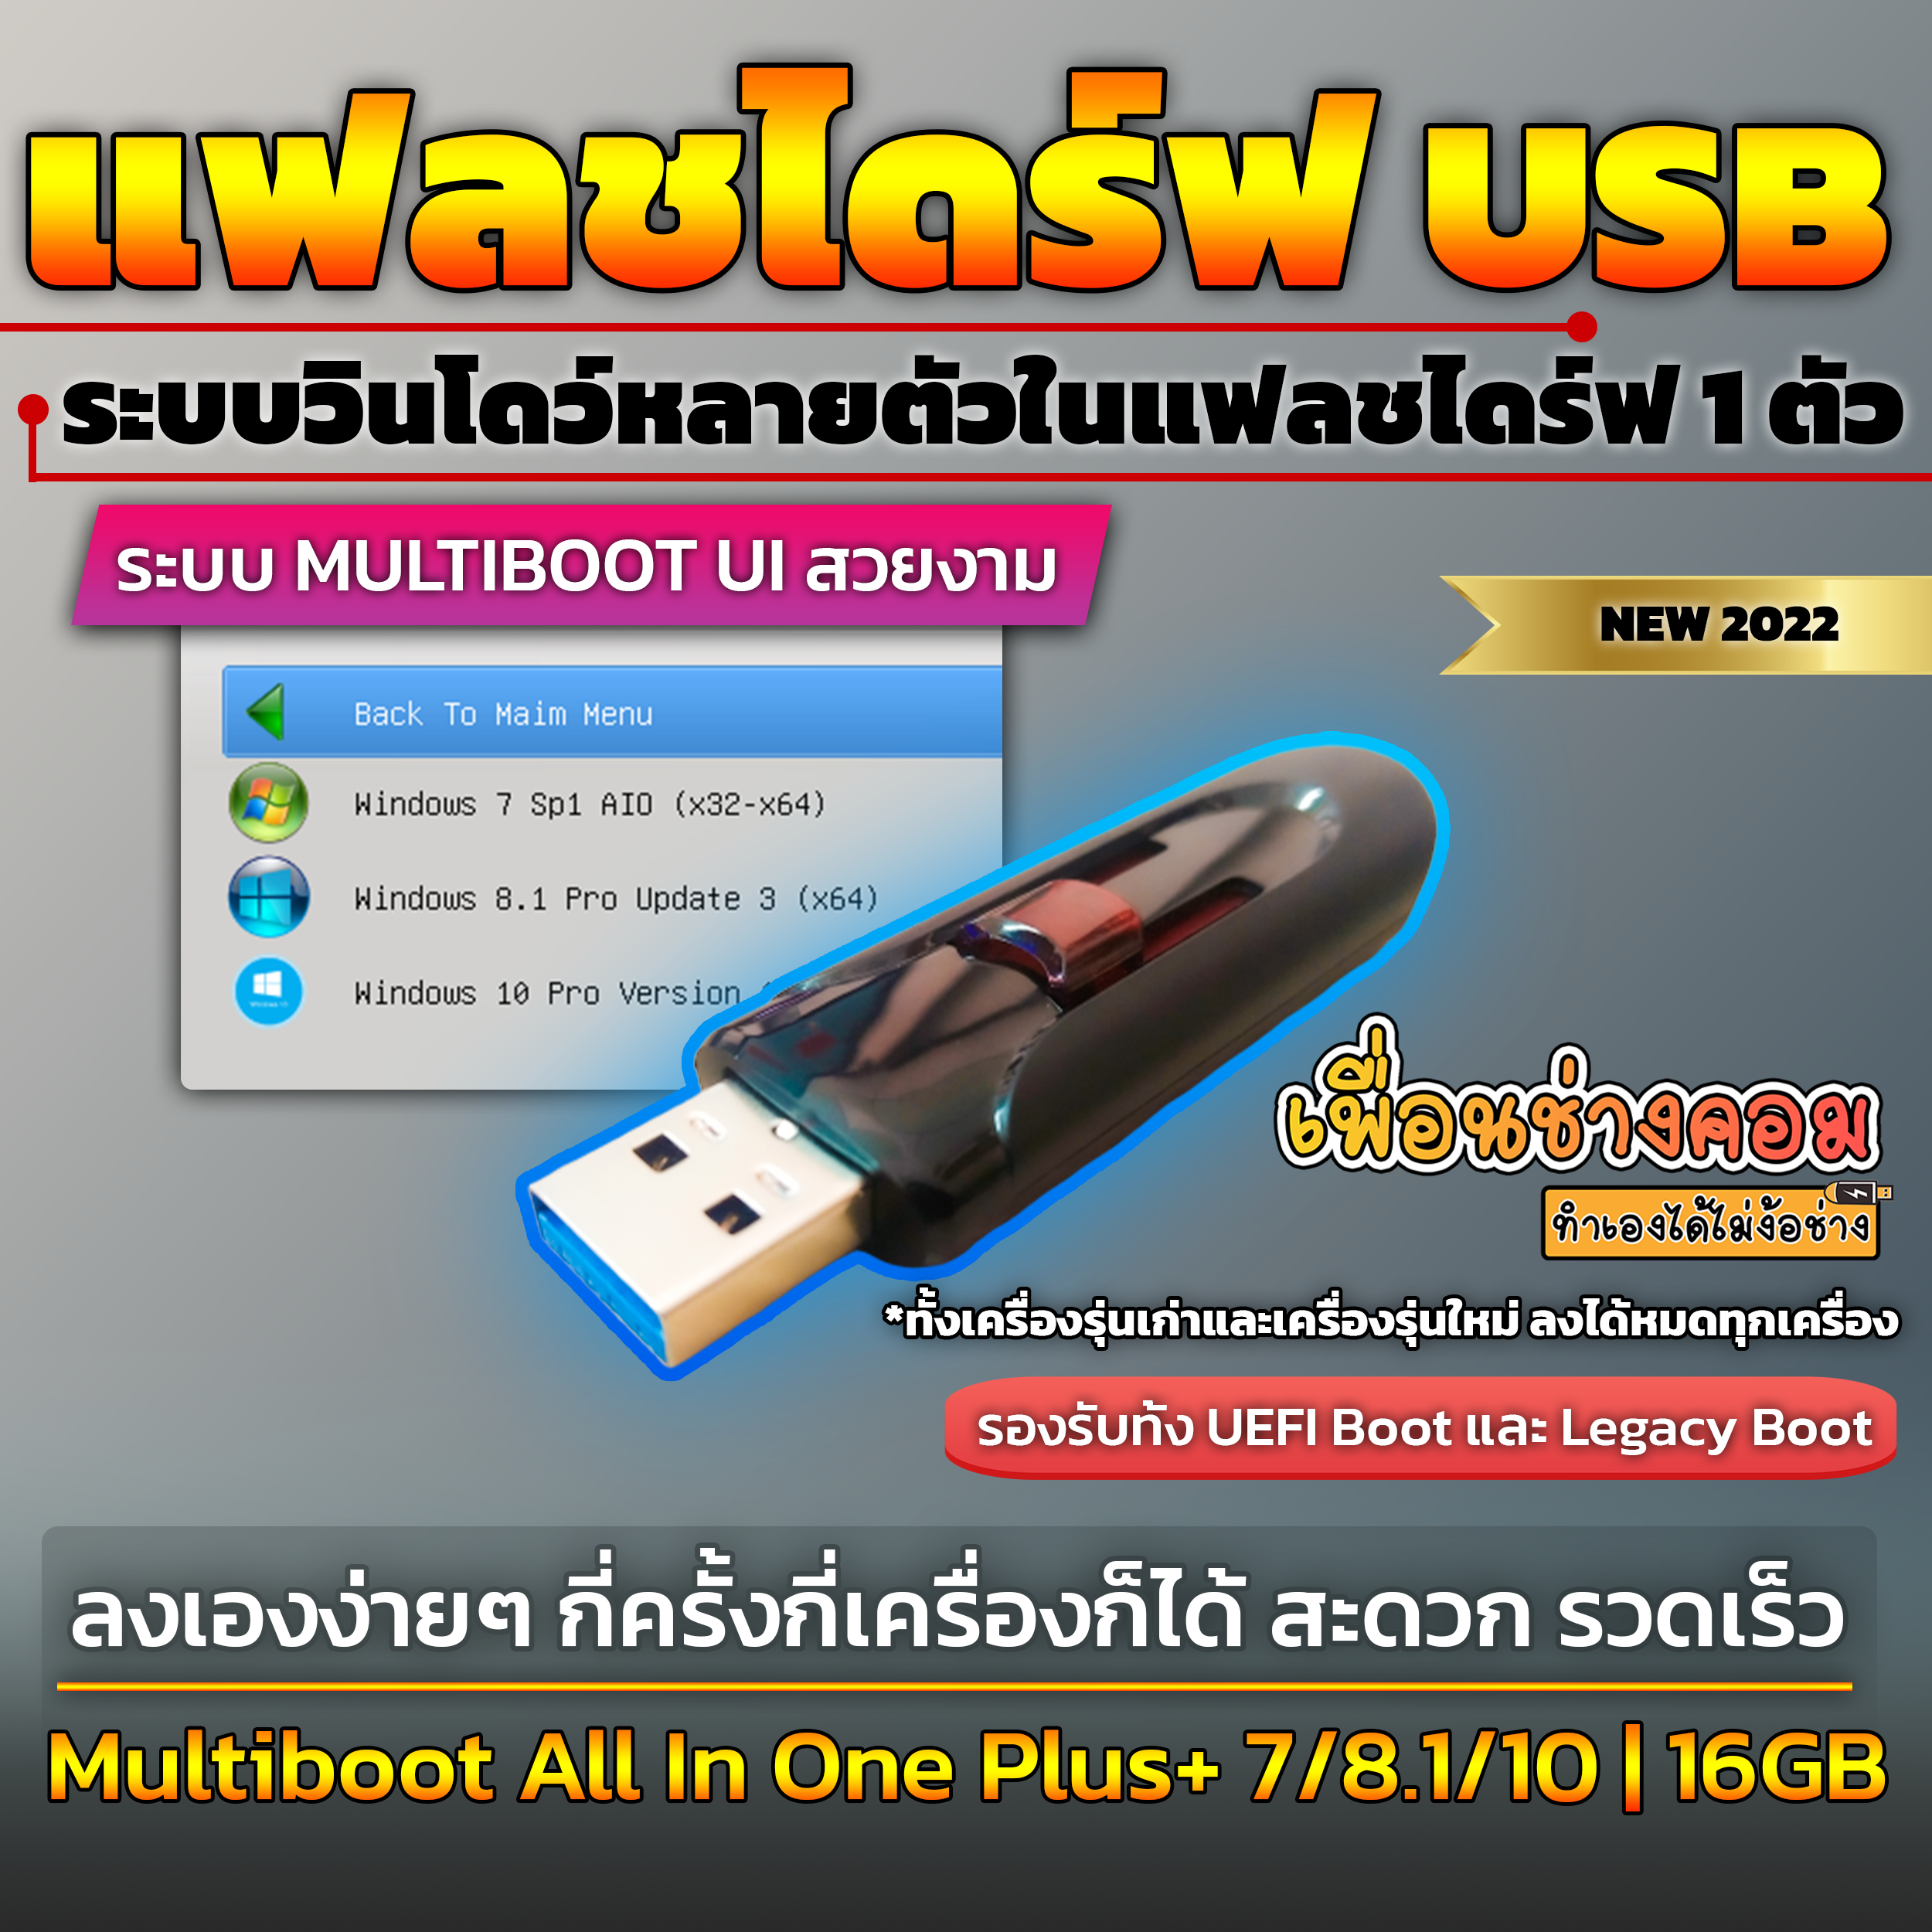 เกี่ยวกับสินค้า USB แฟลชไดร์ รวมวินโดว์ 7AIO/8.1Pro/10Pro | เพื่อนช่างคอม